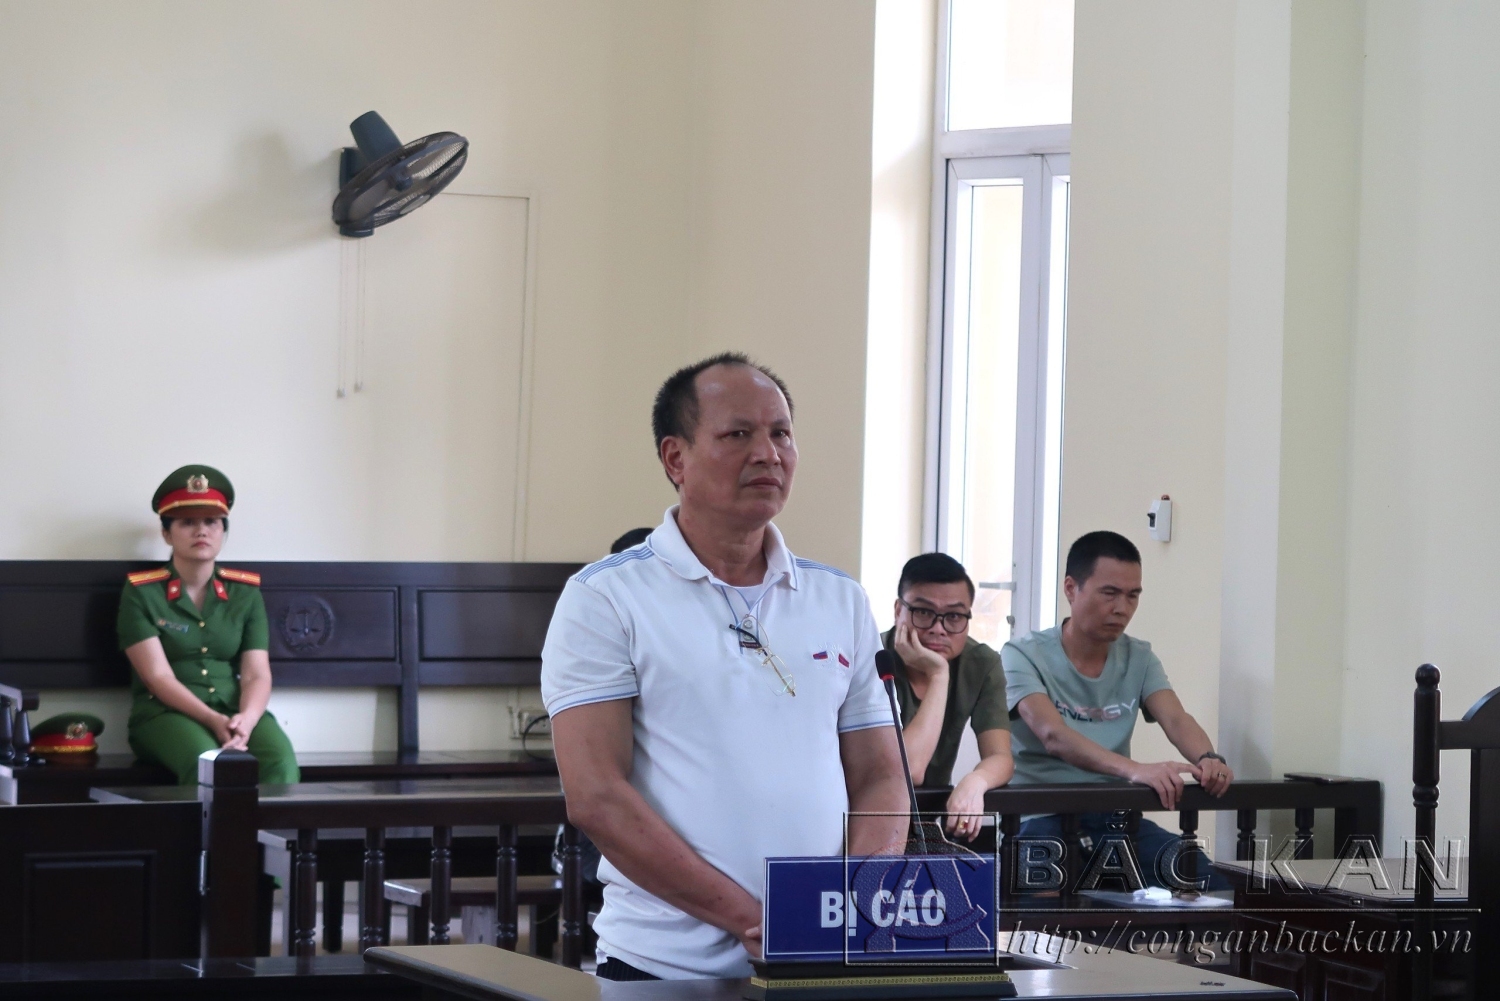  Tòa án nhân dân tỉnh Bắc Kạn xử phạt bị cáo Vũ Ngọc Hường, trú tại huyện Chợ Đồn 20 tháng tù treo về tội “Tàng trữ, vận chuyển, mua bán trái phép vật liệu nổ”